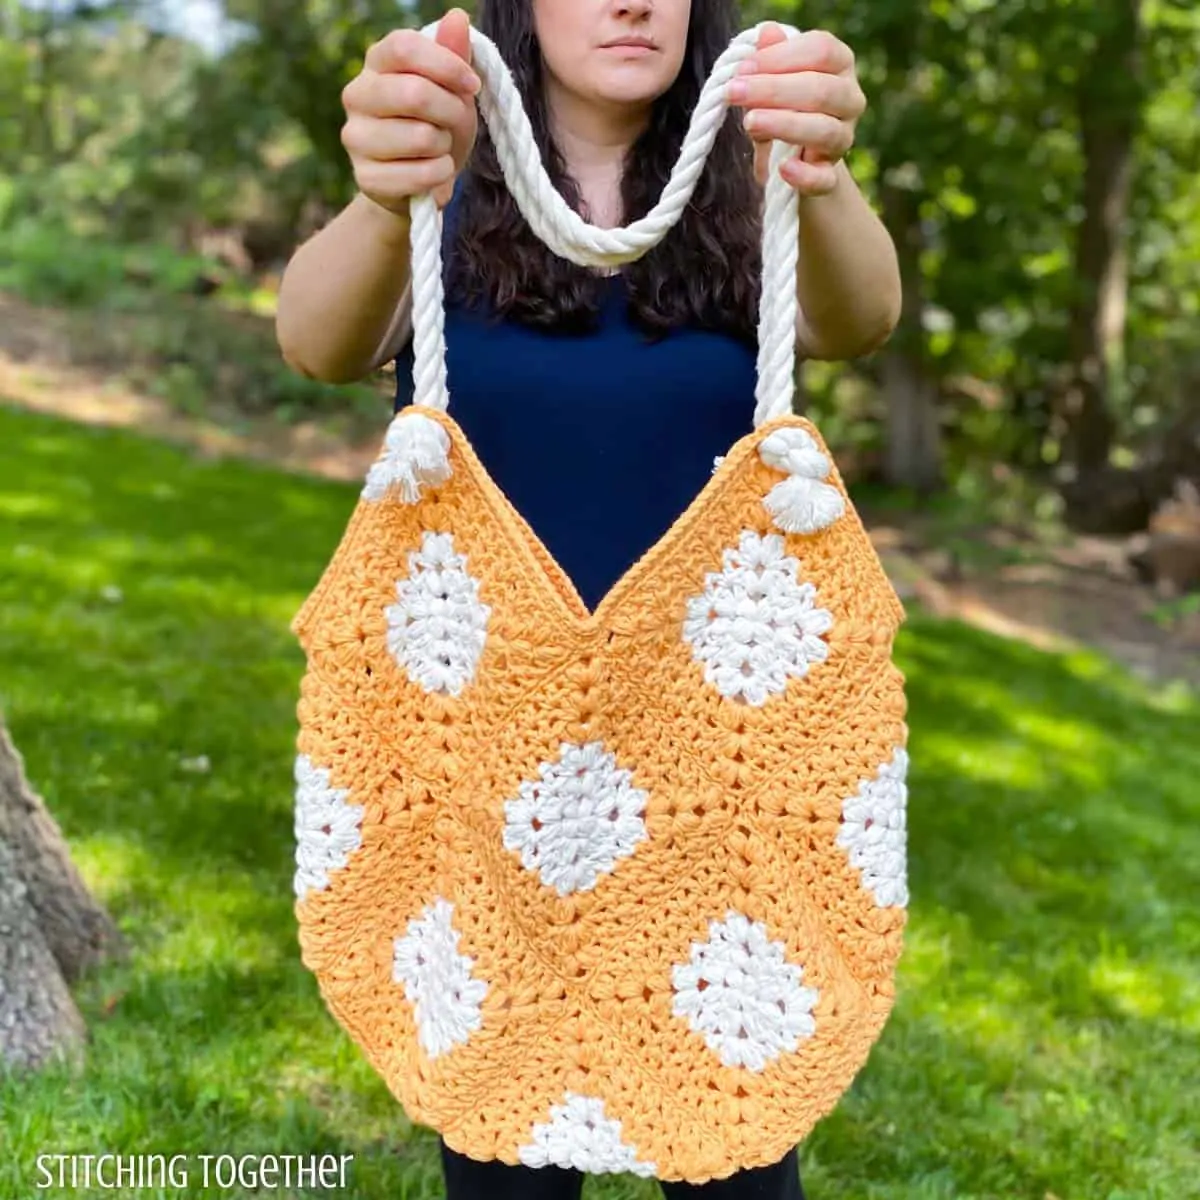 lady holding orange and white crochet market bag